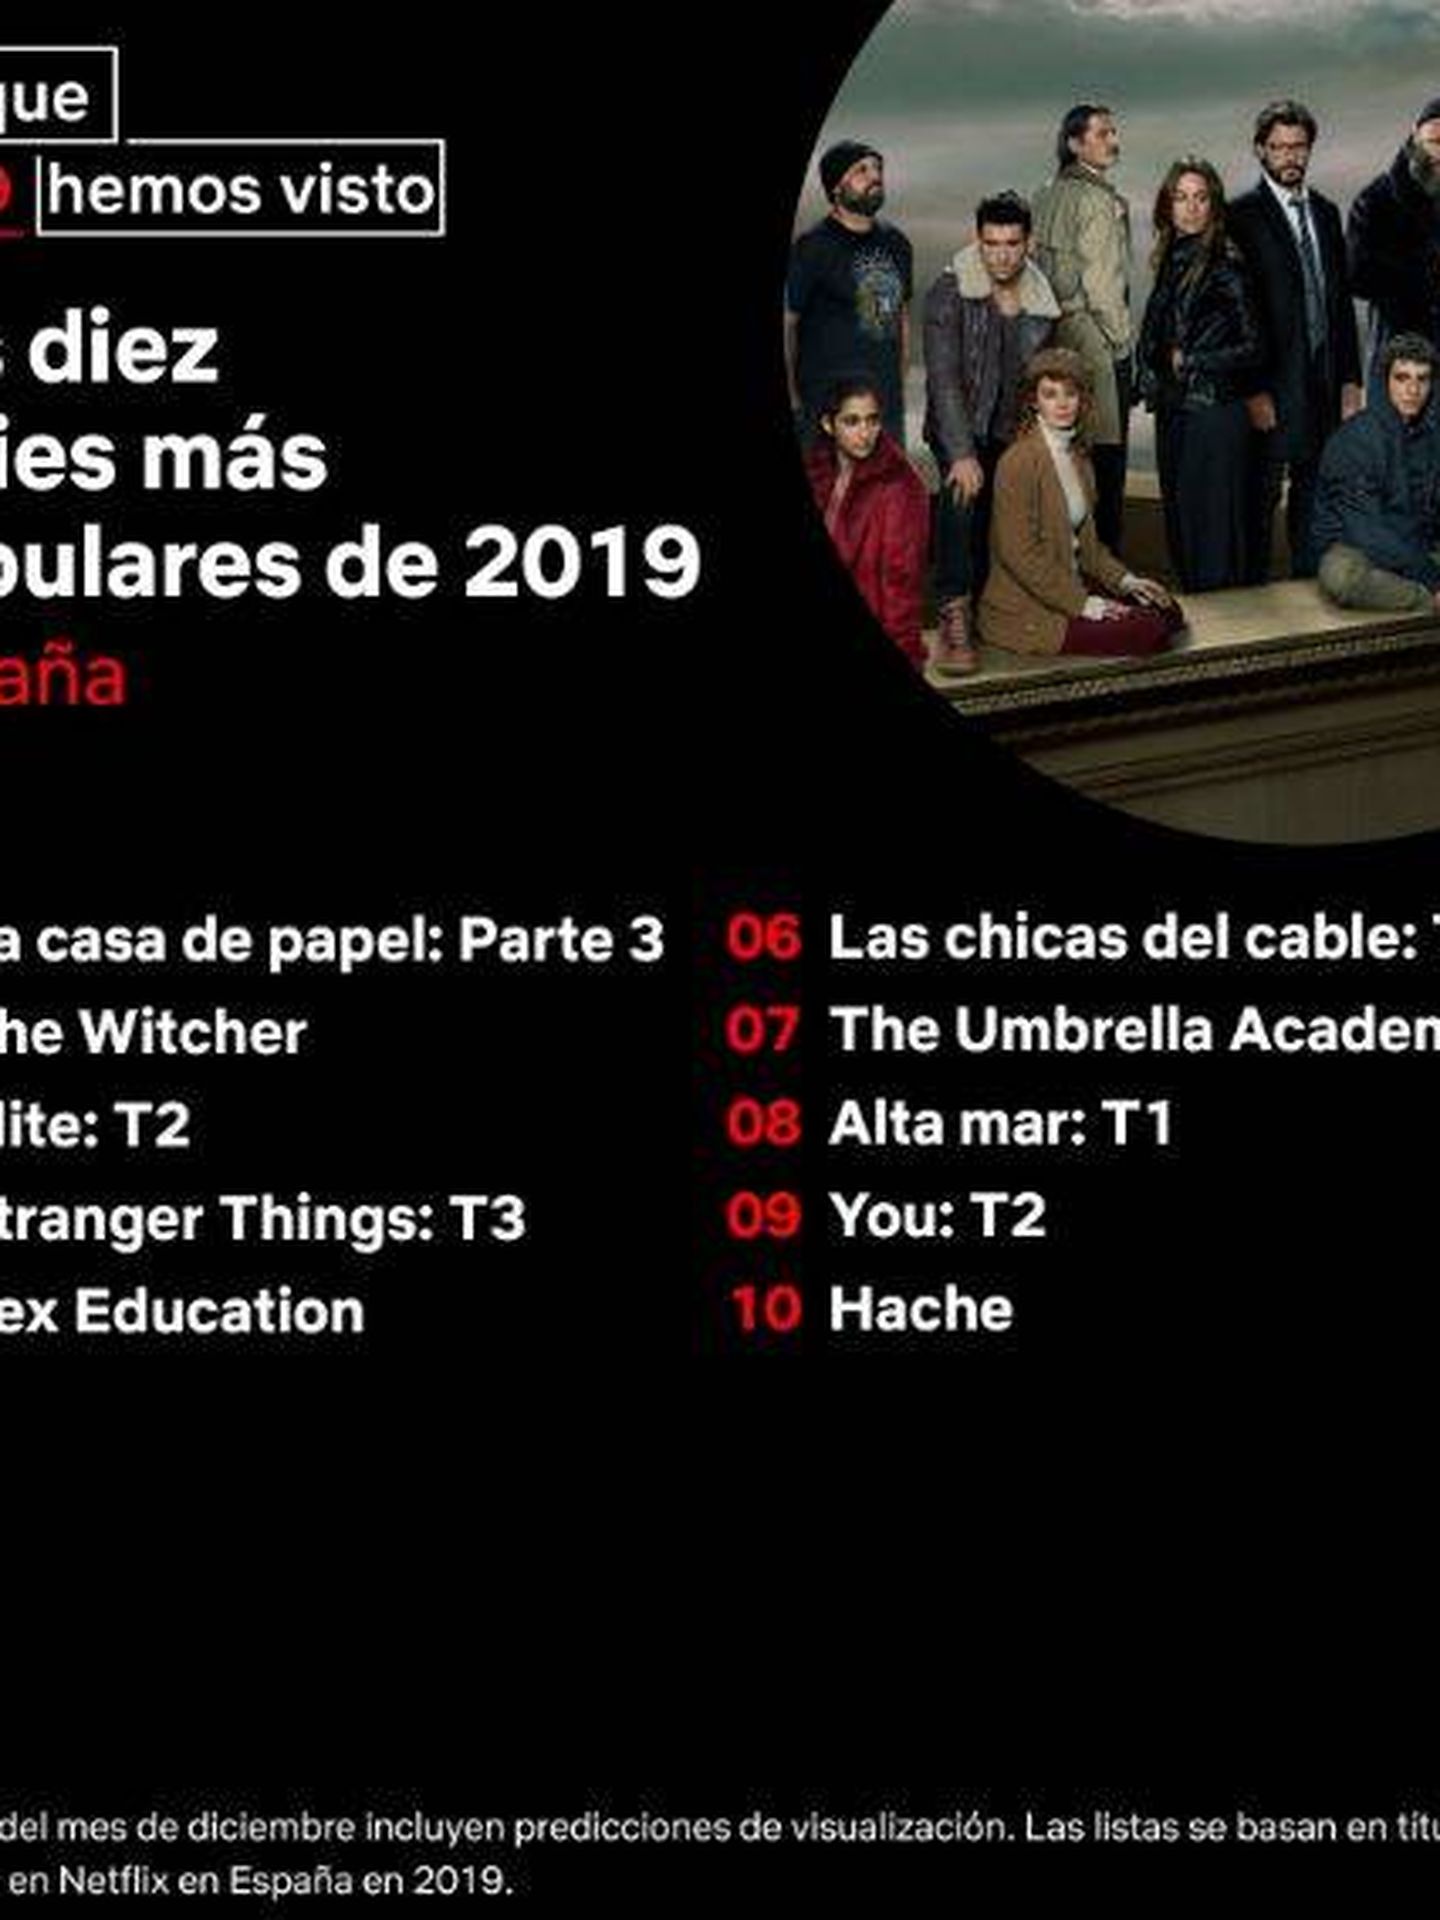 Las series de Netflix más populares del año en España. (Twitter)